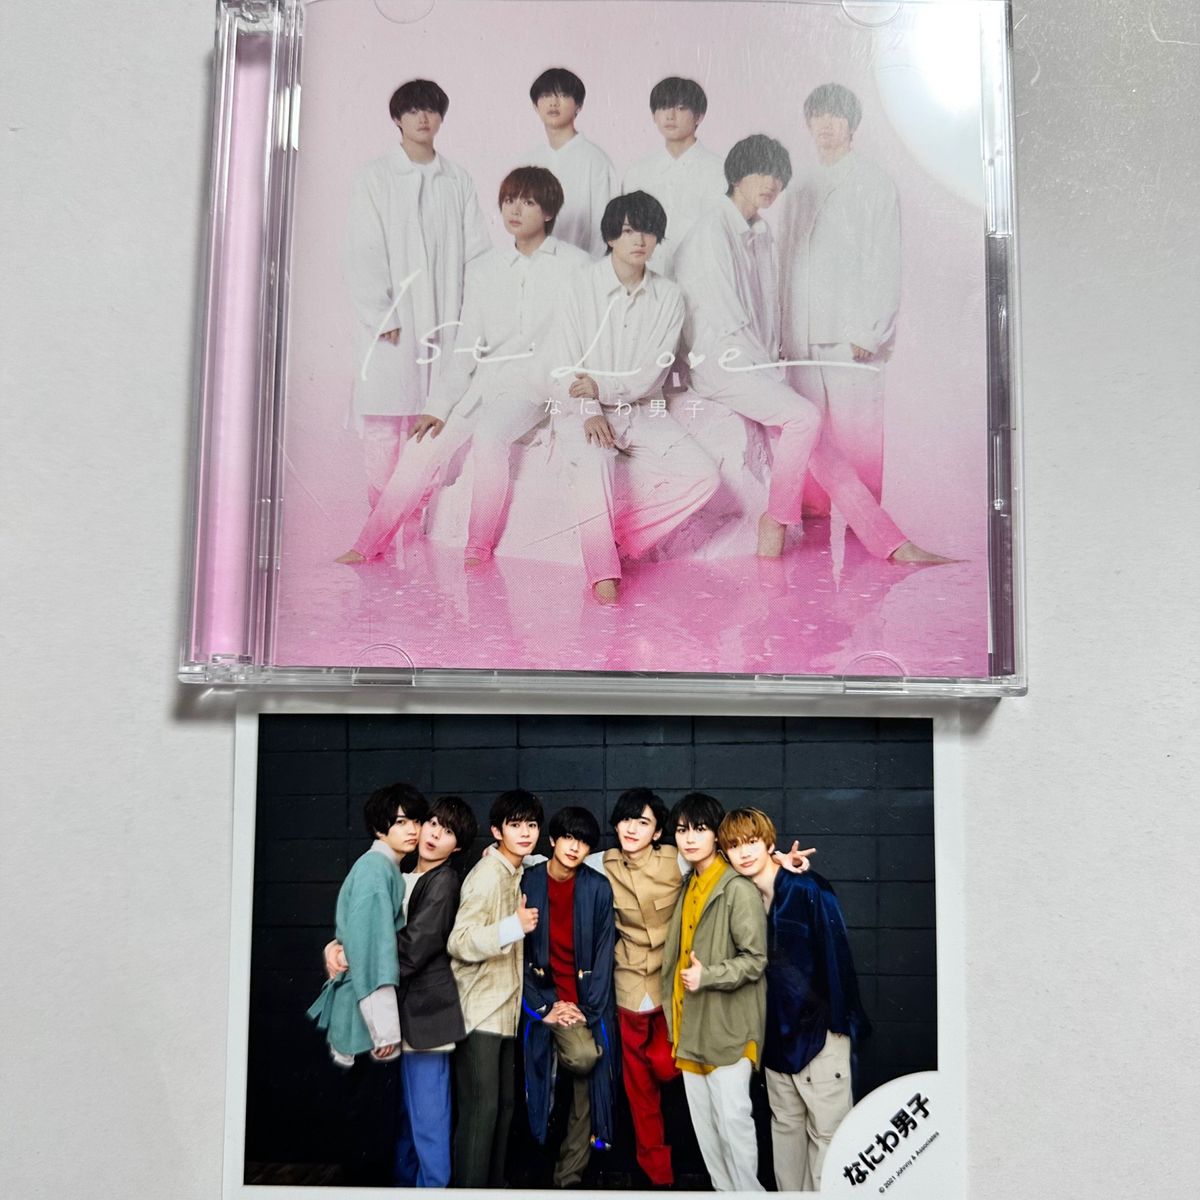 初回限定盤2 CD+Blu-ray なにわ男子 1st Love アルバム